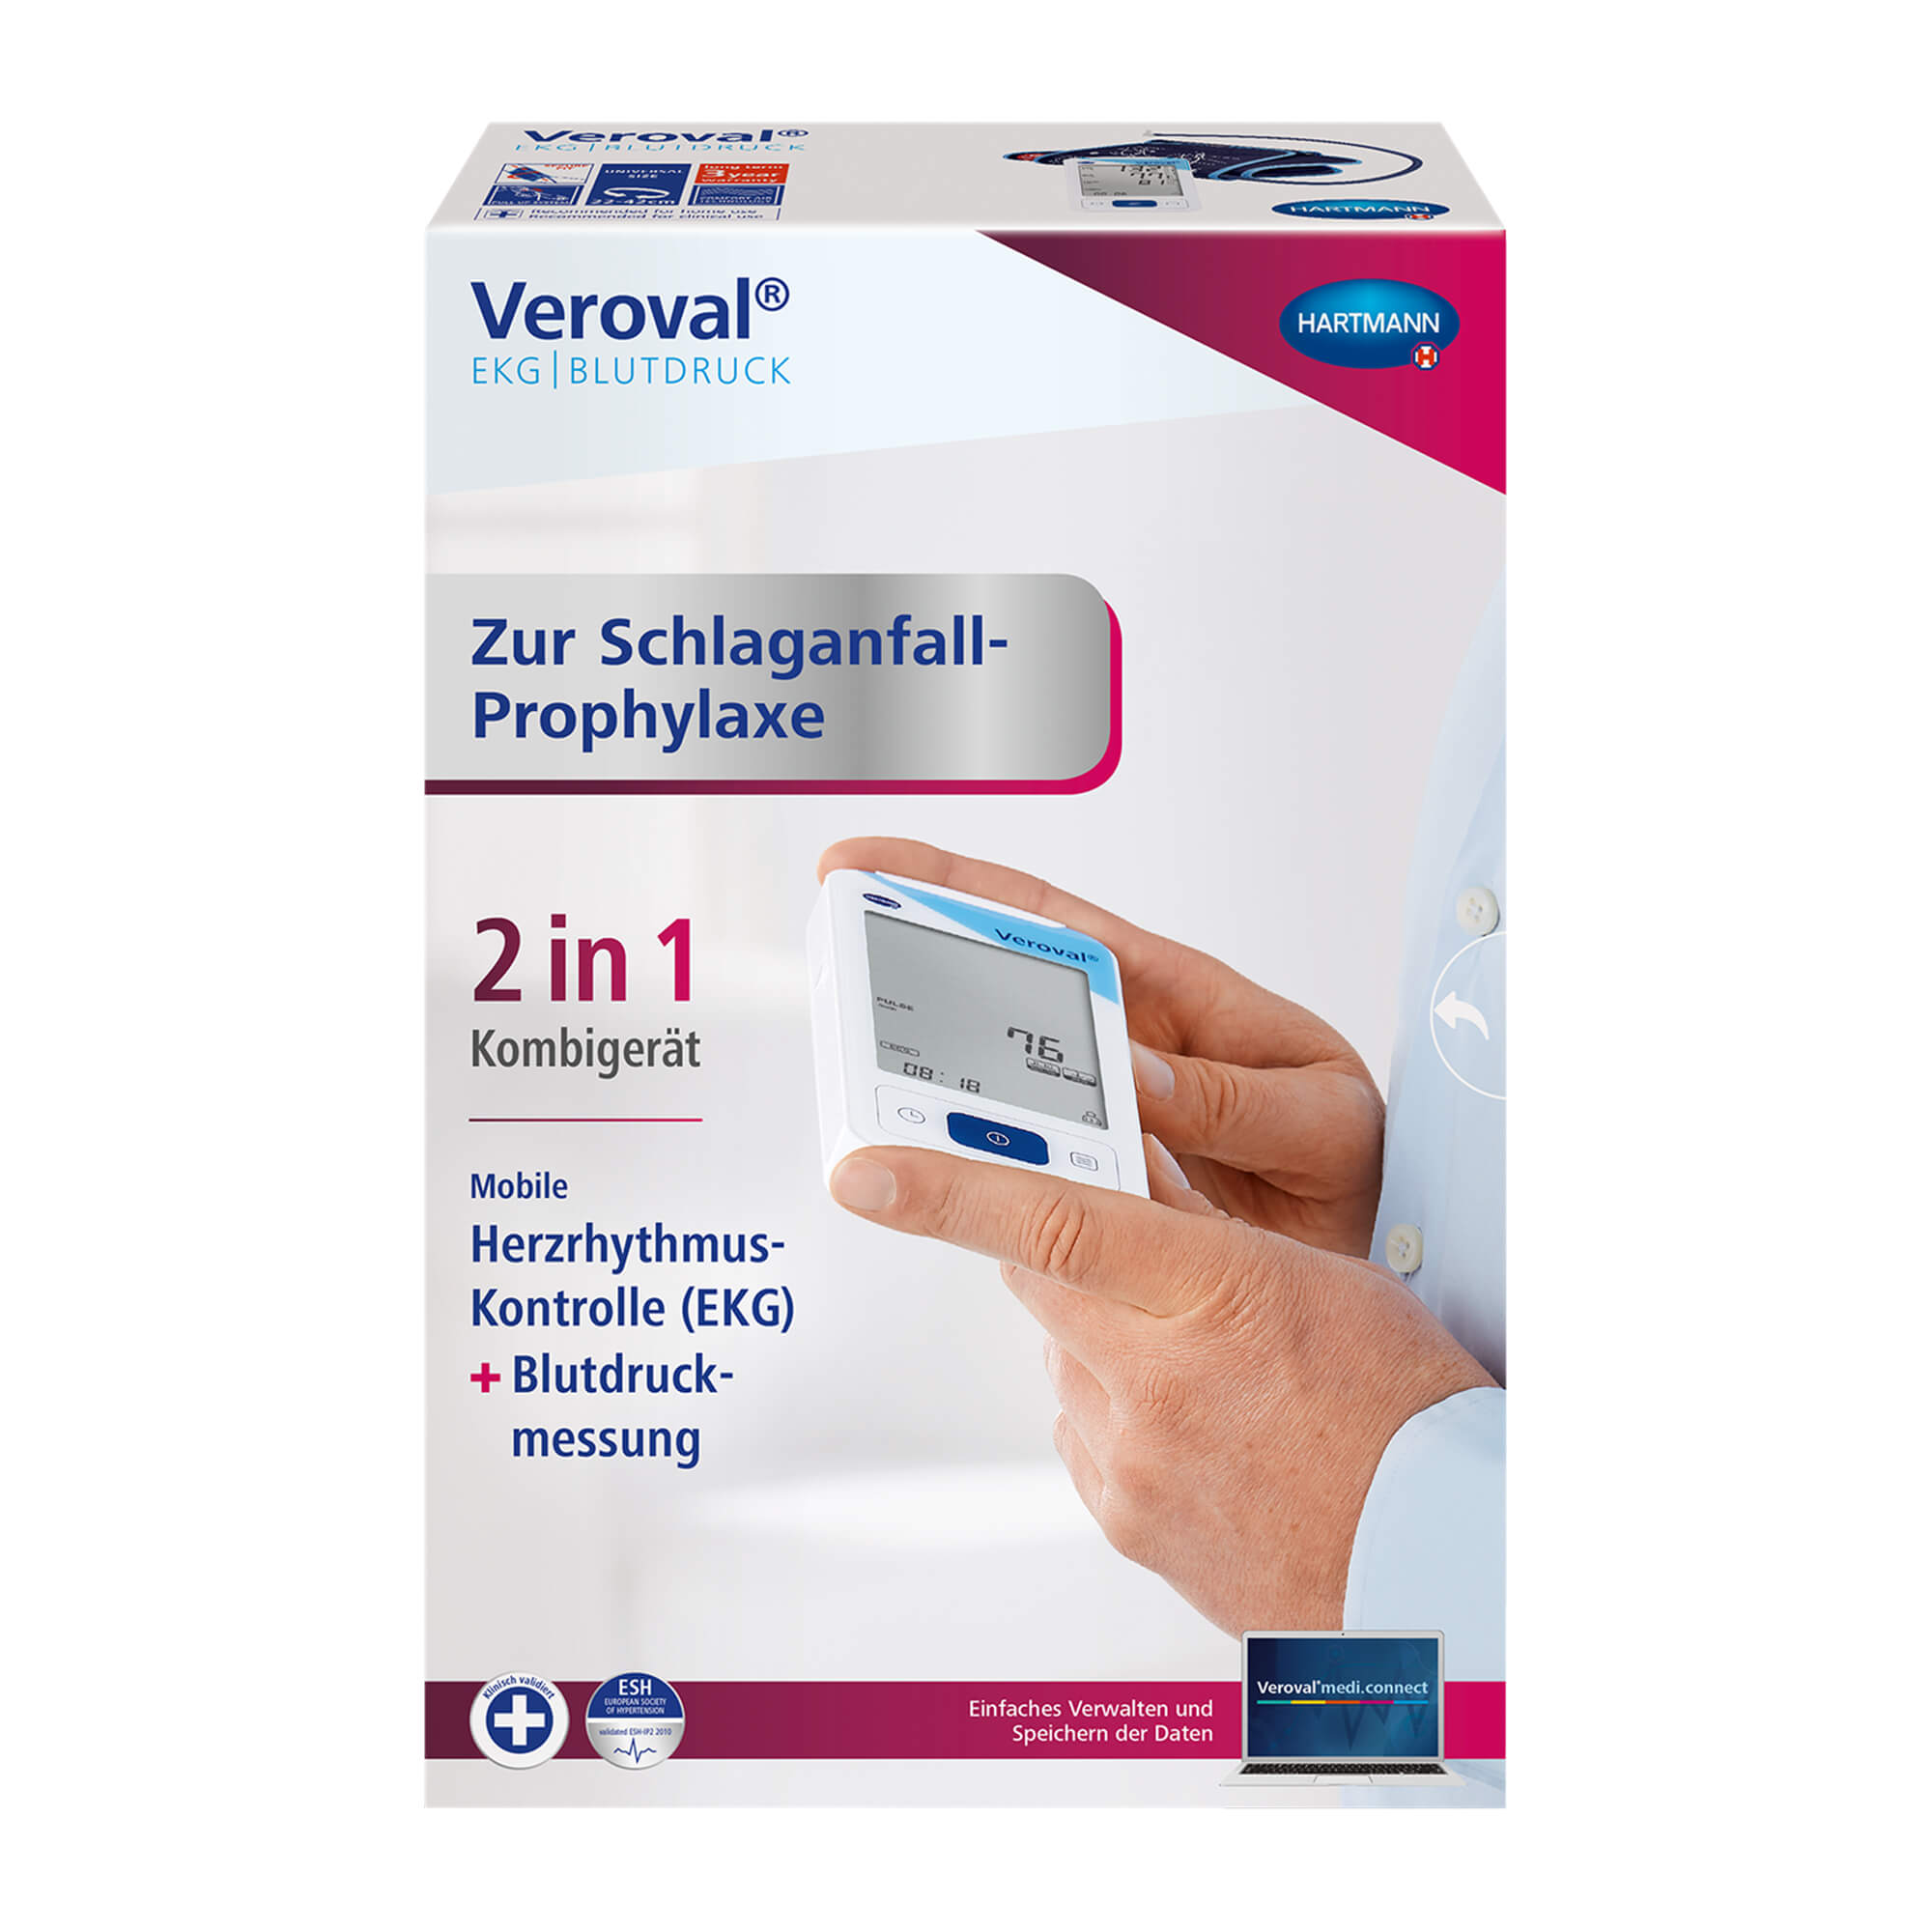 Zur Schlaganfall-Prophylaxe: Das Veroval® 2 in1 Kombigerät zur mobilen Herzrhythmus-Kontrolle (EKG) und Blutdruckmessung.